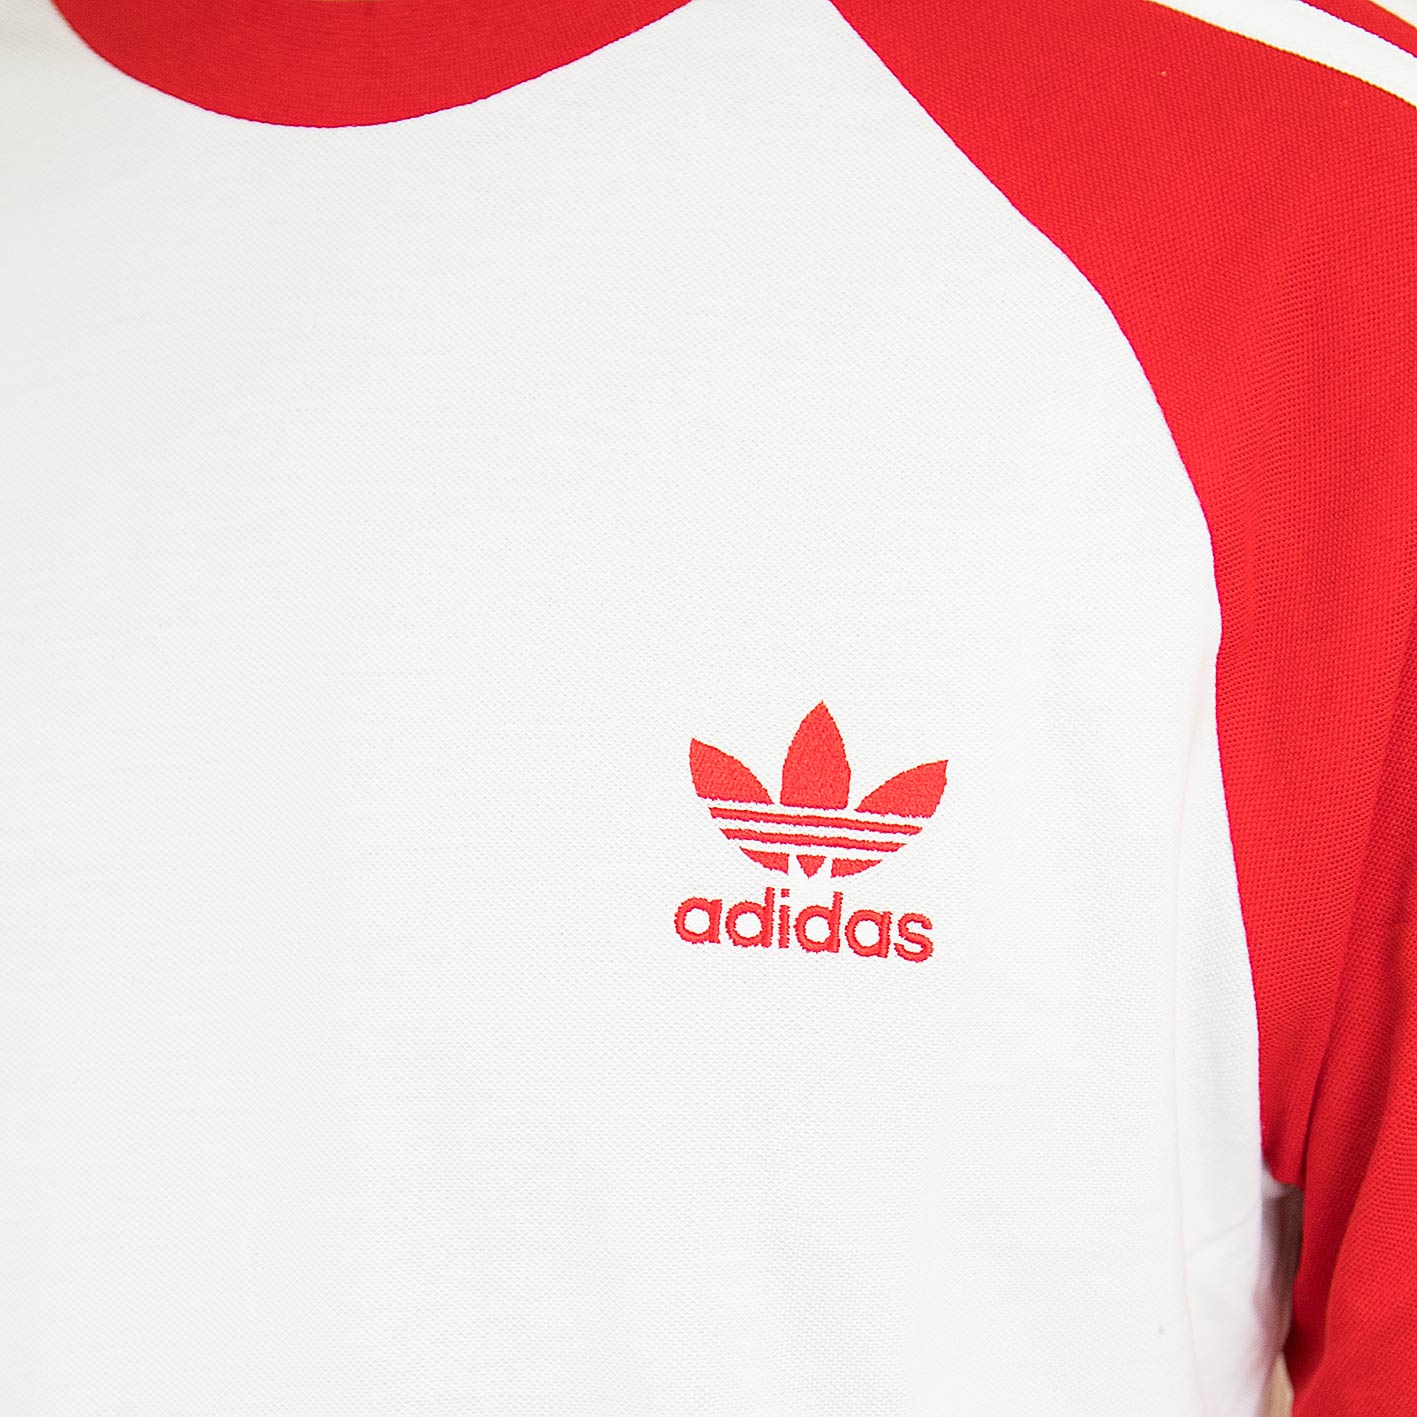 ☆ Adidas Originals Longsleeve 3-Stripes rot/weiß - hier bestellen!